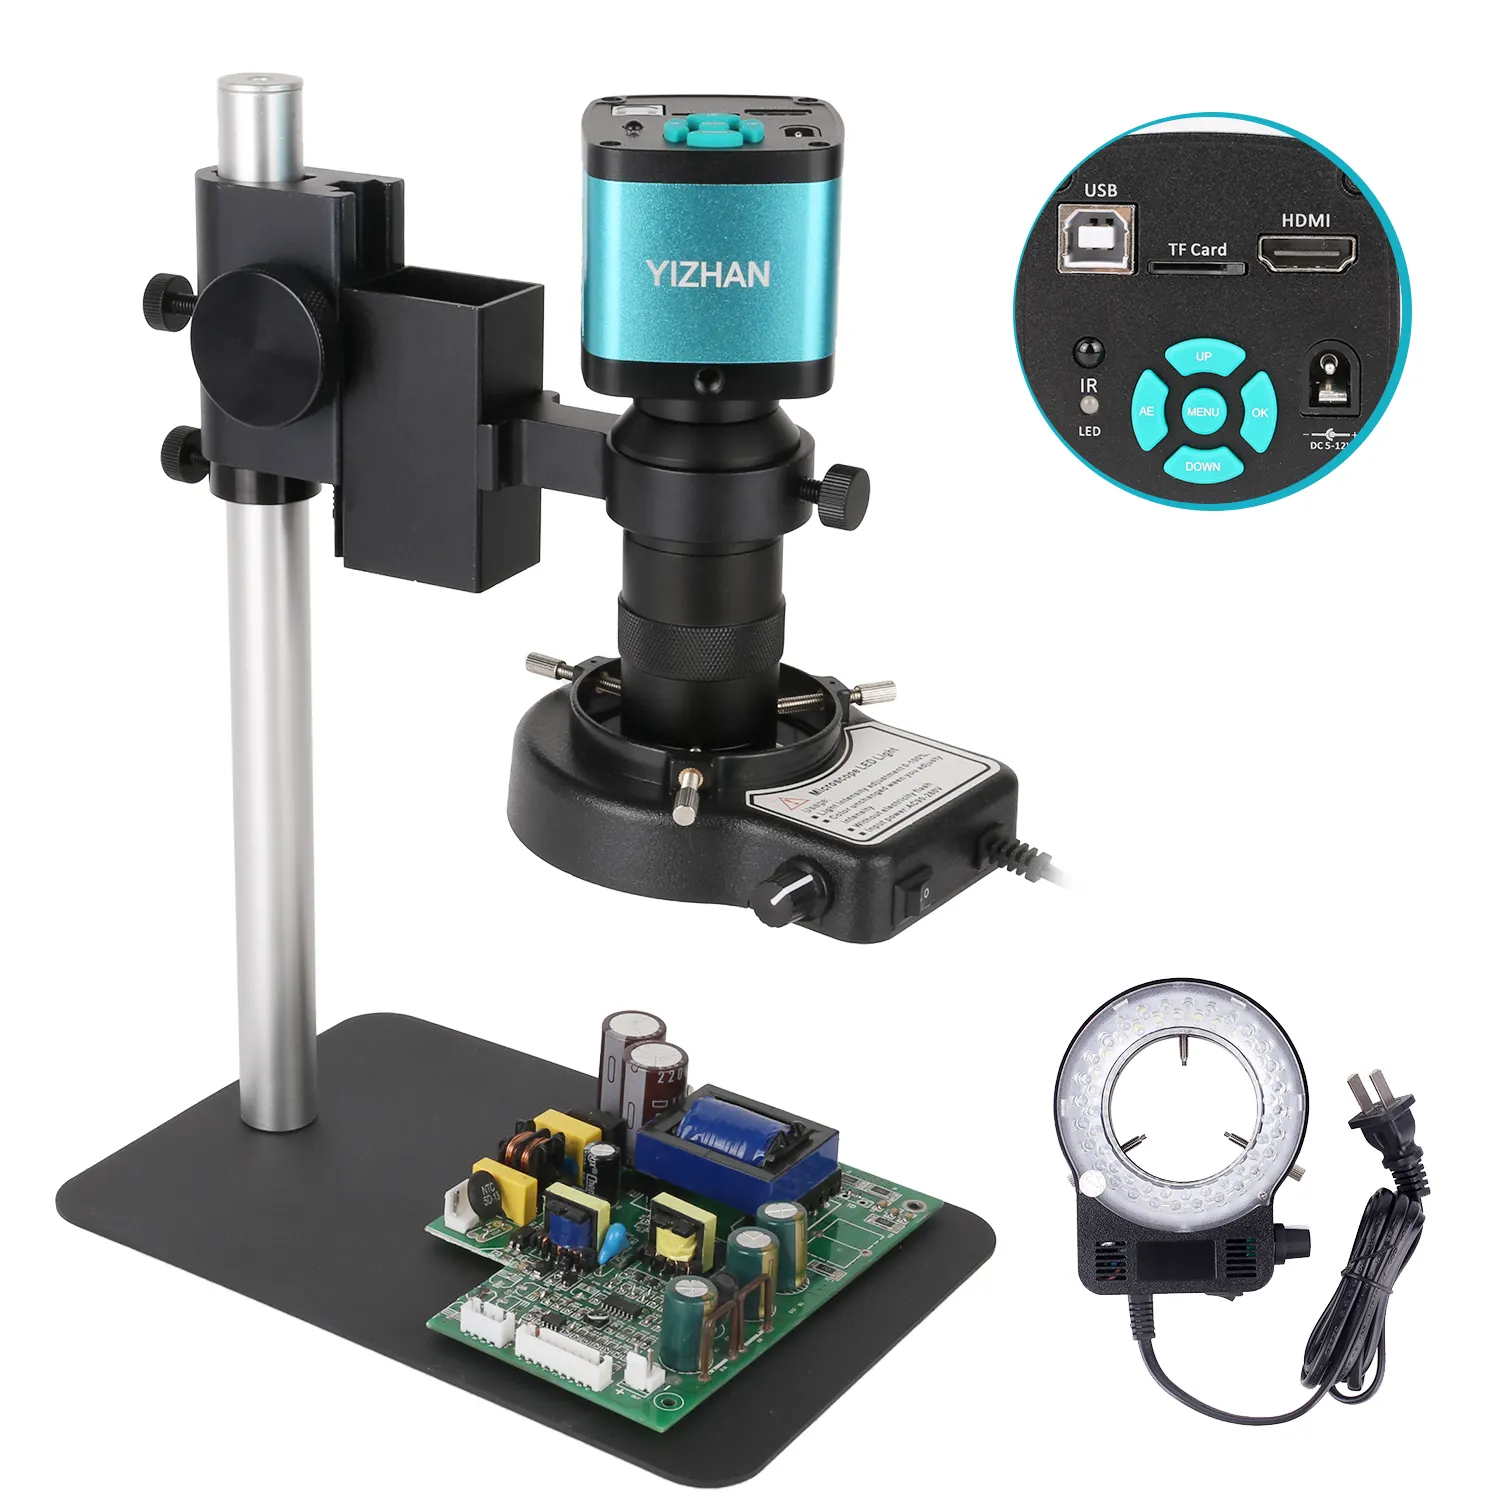 H-D-M-I USB industriel électronique numérique vidéo Microscope caméra 48MP 1080P 60FPS lumière LED pour téléphone CPU PCB réparation